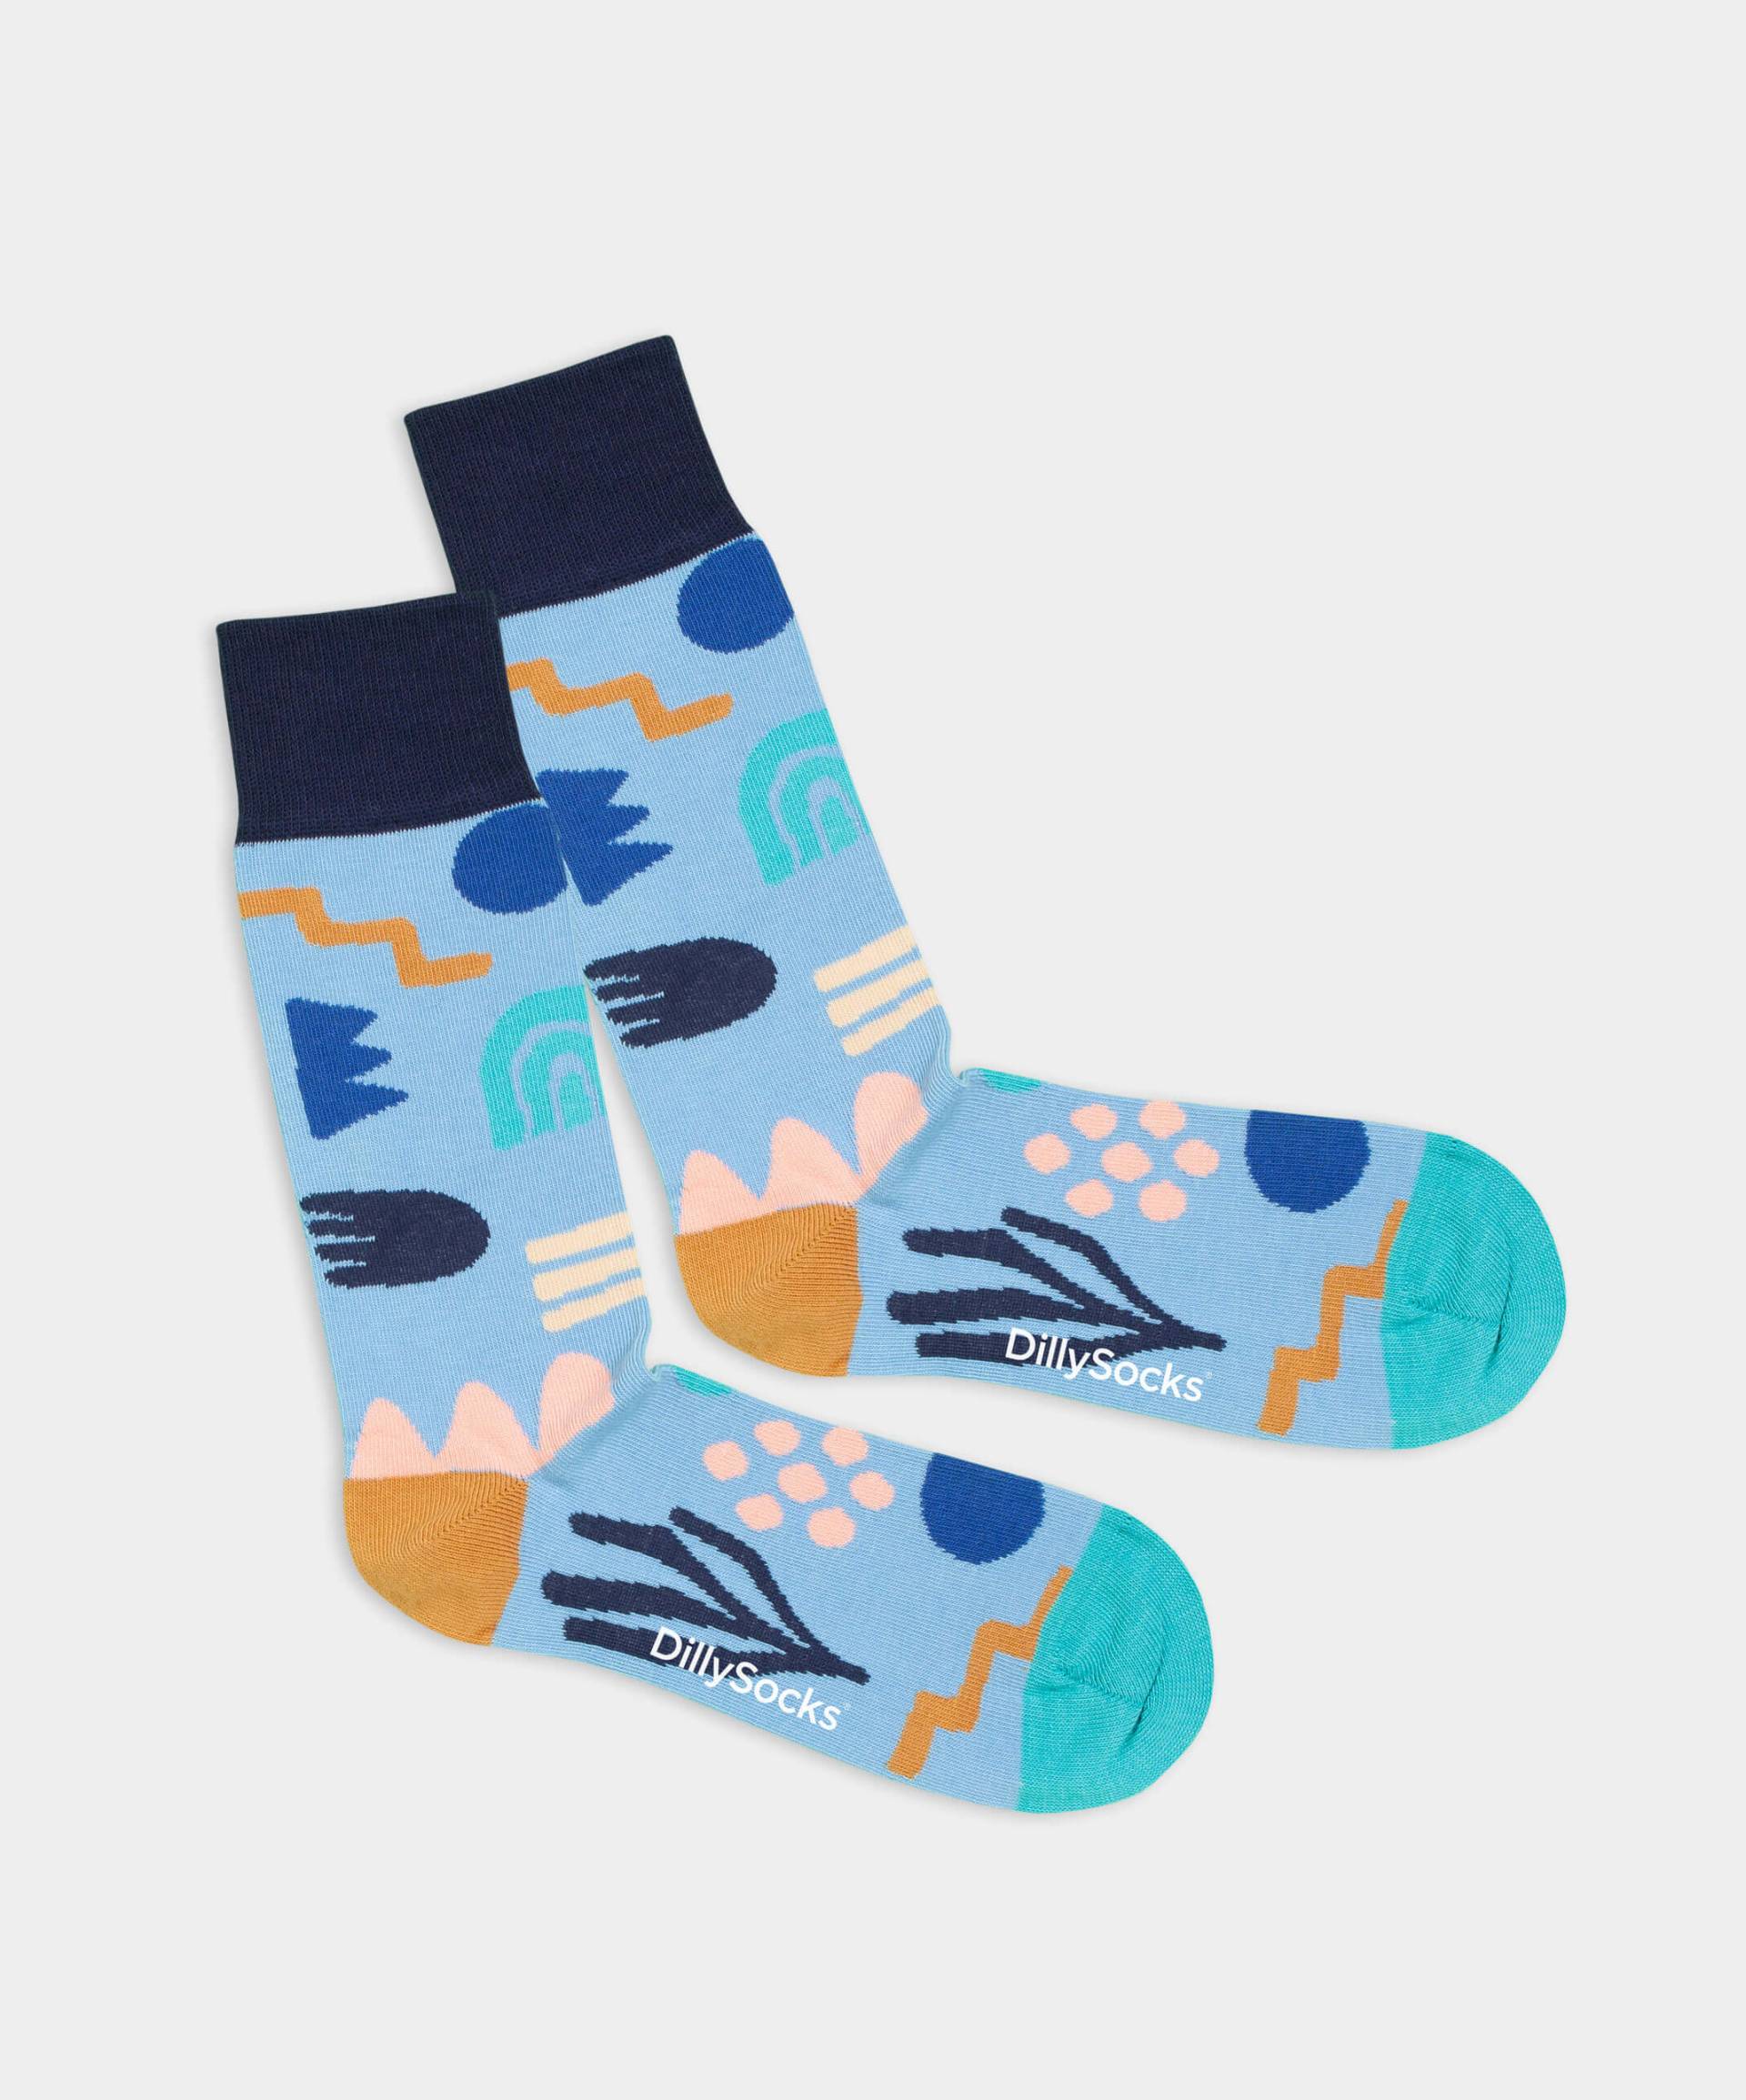 - Socken in Blau mit Geometrisch Motiv/Muster von DillySocks